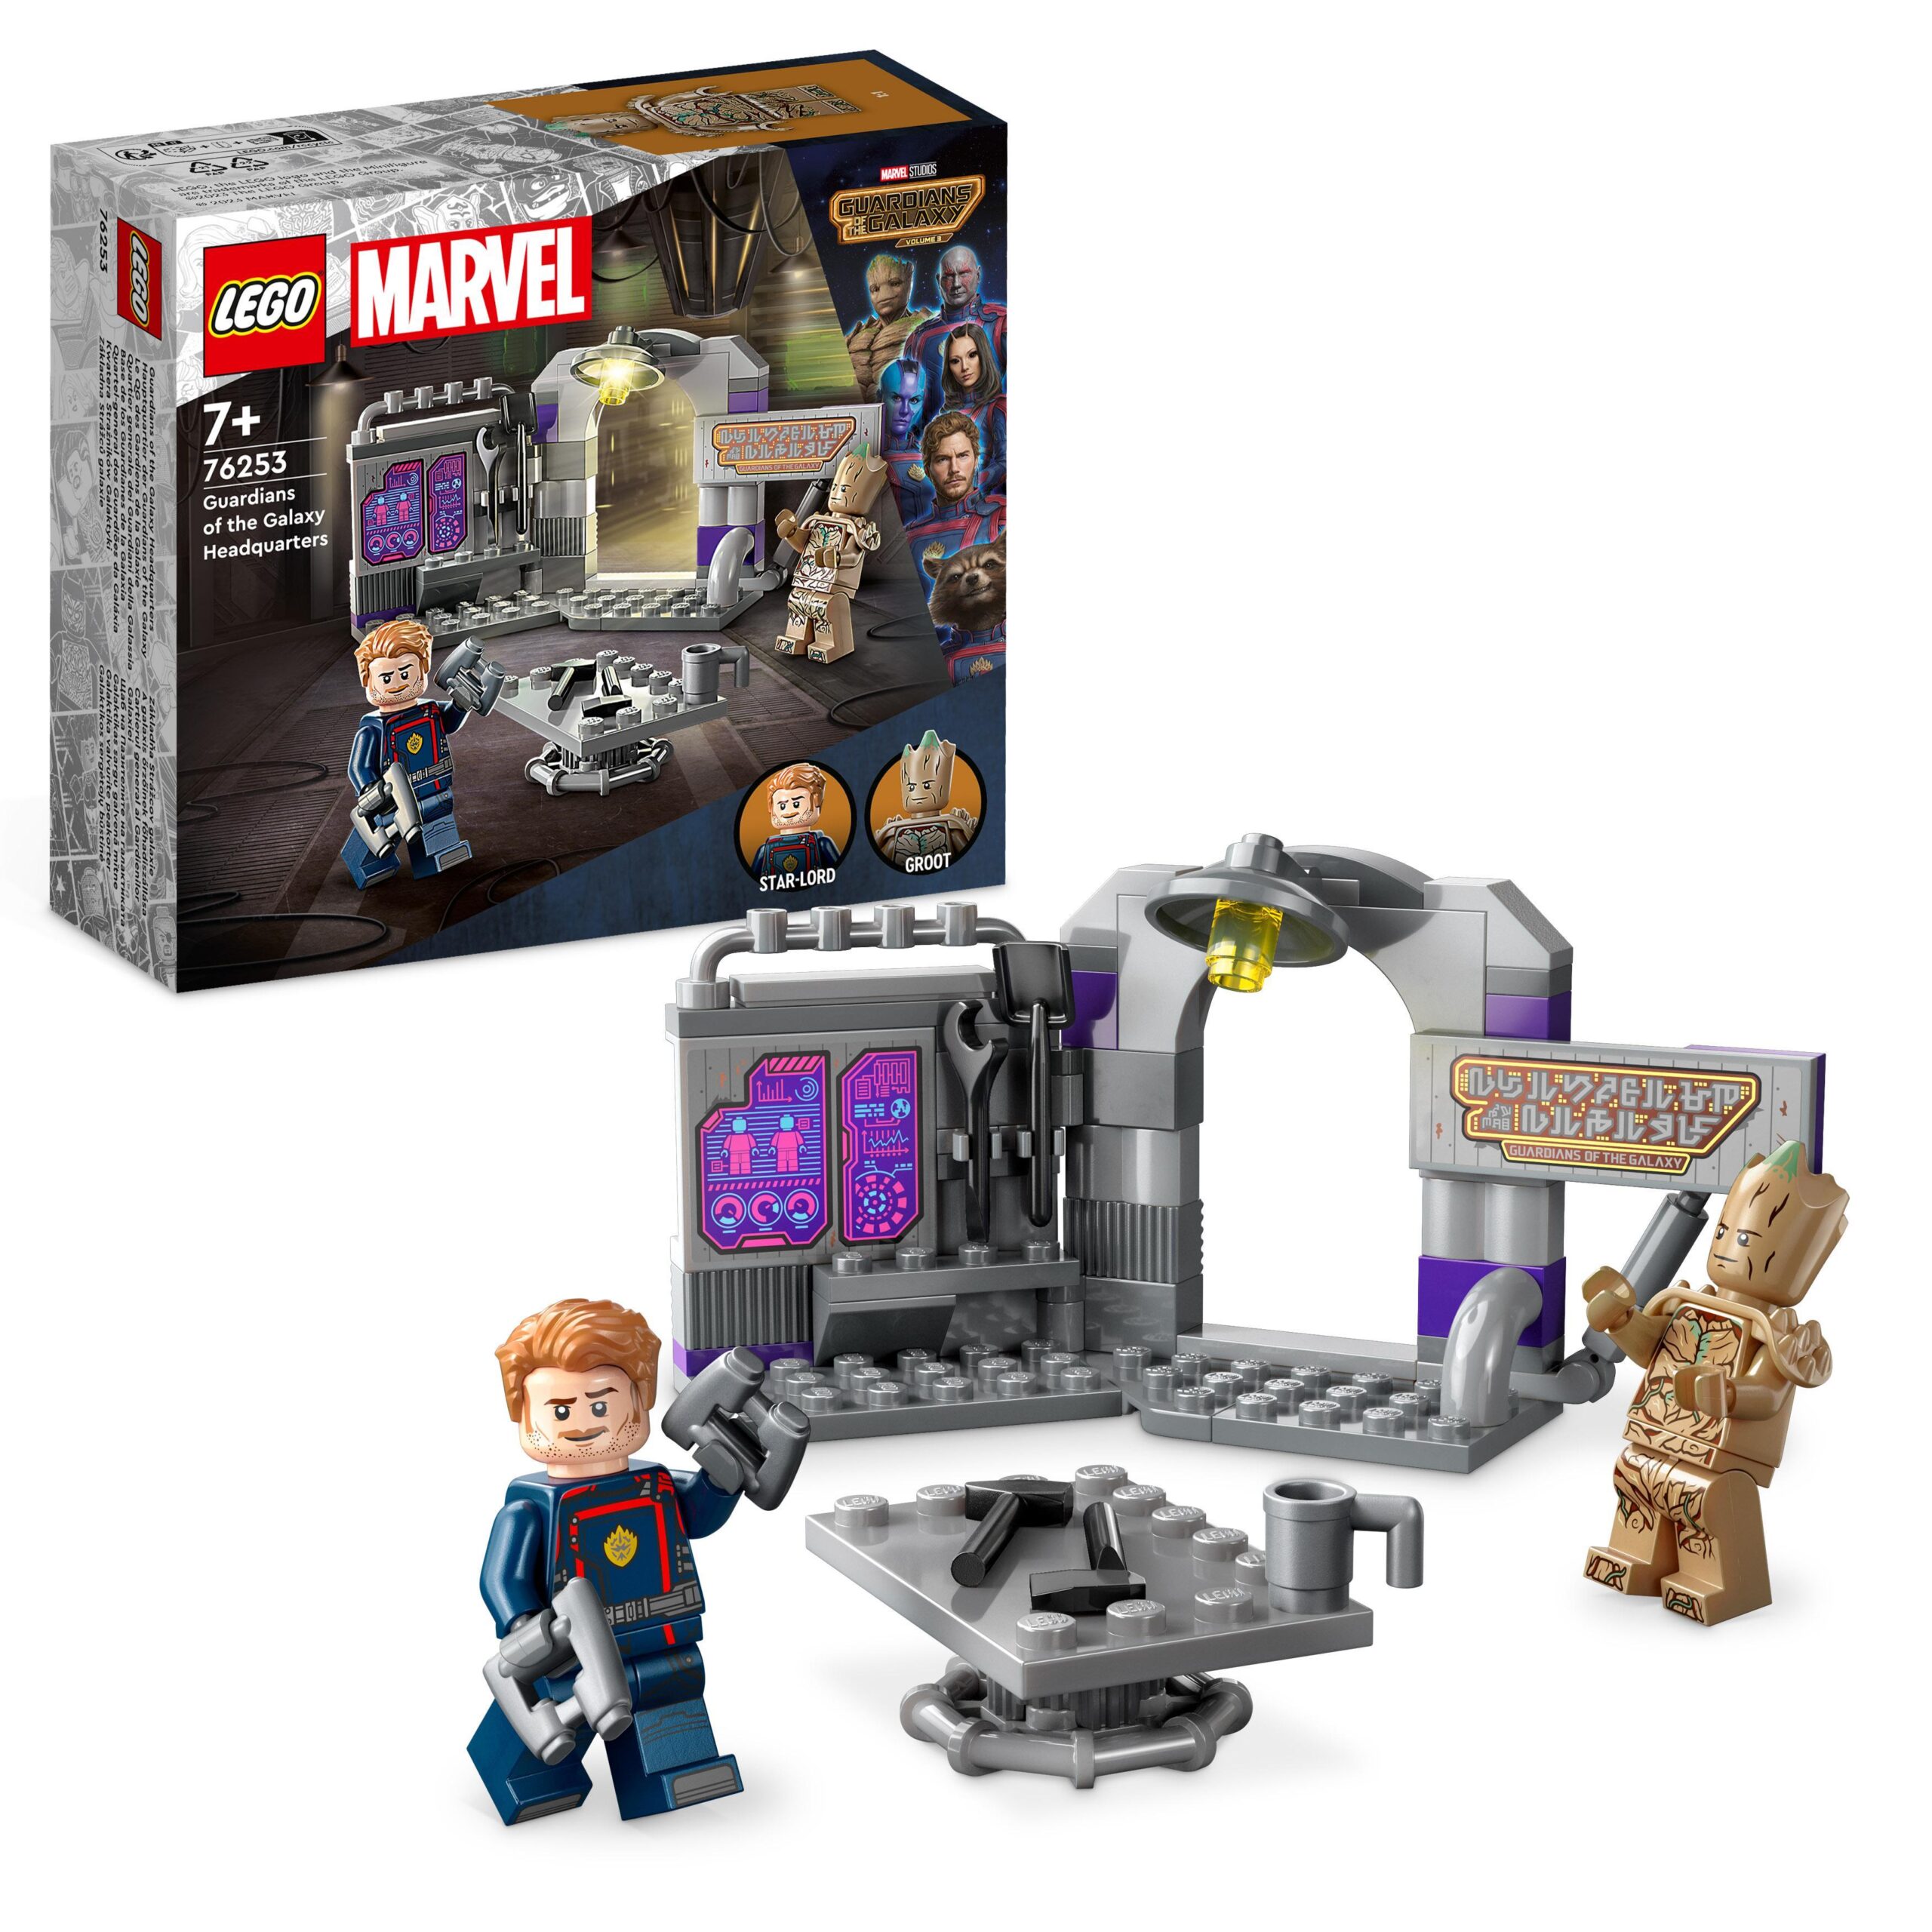 Lego marvel 76253 quartier generale dei guardiani della galassia volume 3 con groot e star-lord, giocattoli da supereroi - LEGO SUPER HEROES